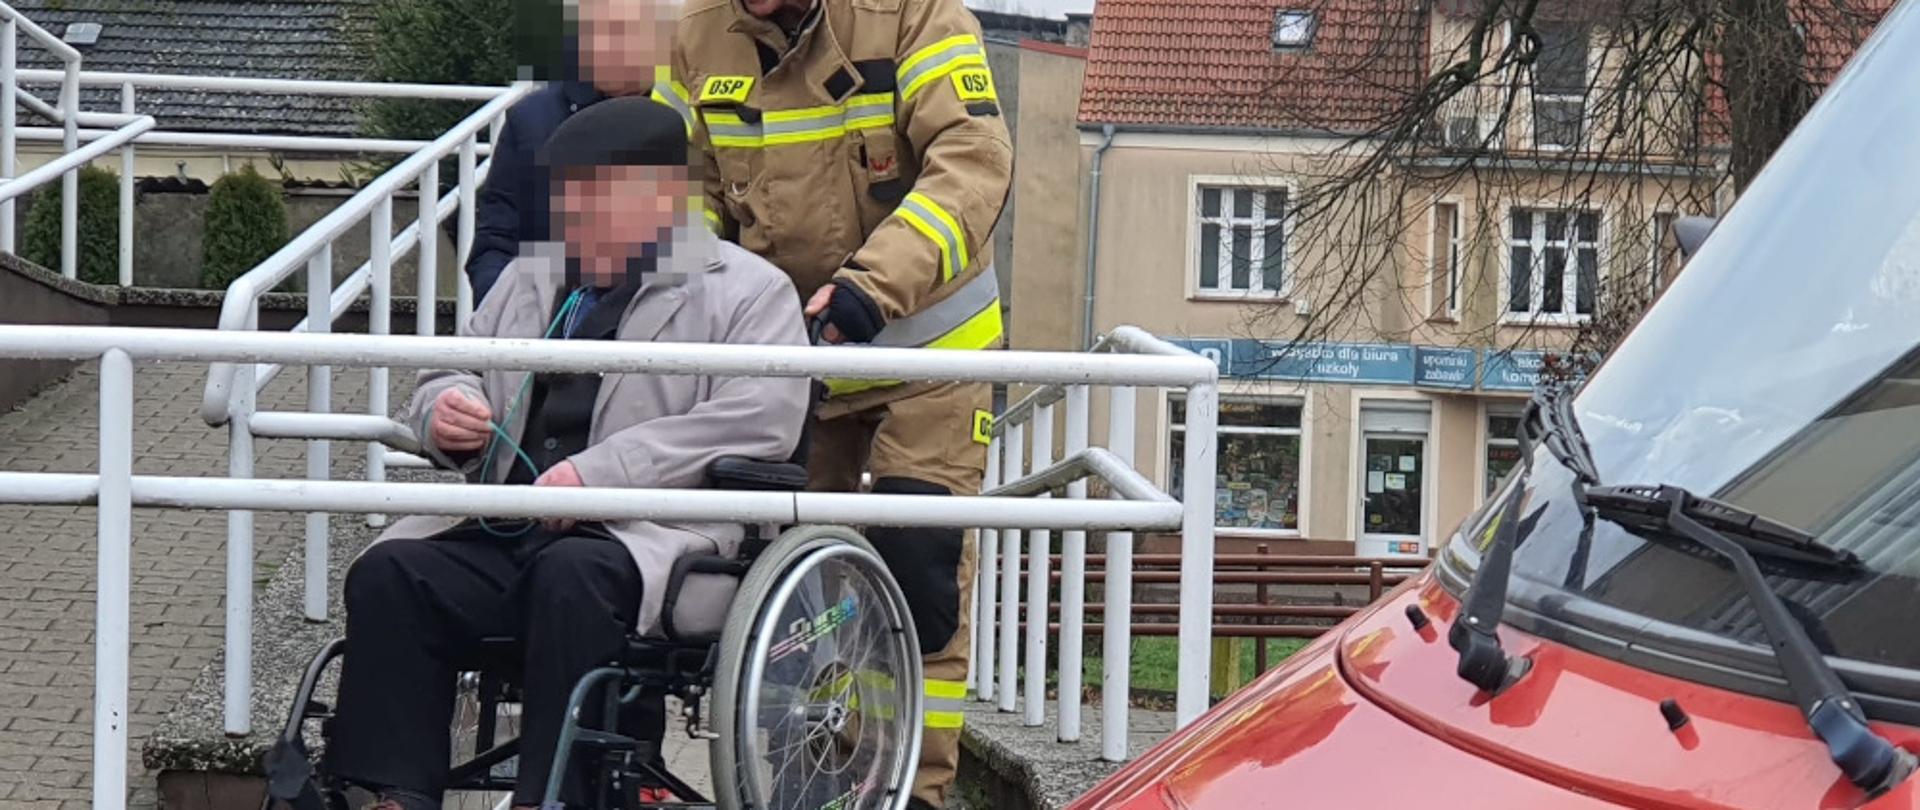 Strażak z OSP Barwice dh Mirosław Tojnacki ubrany w ubranie specjalne, koloru pisakowego z napisami OSP na podjeździe dla niepełnosprawnych, transportuje osobę niepełnosprawną (mężczyznę w starszym wieku) na wózku inwalidzkim. Obok idzie kobieta ubrana w kurtkę granatową i niesie butlę z tlenem niezbędną do oddychania osobie na wózku.